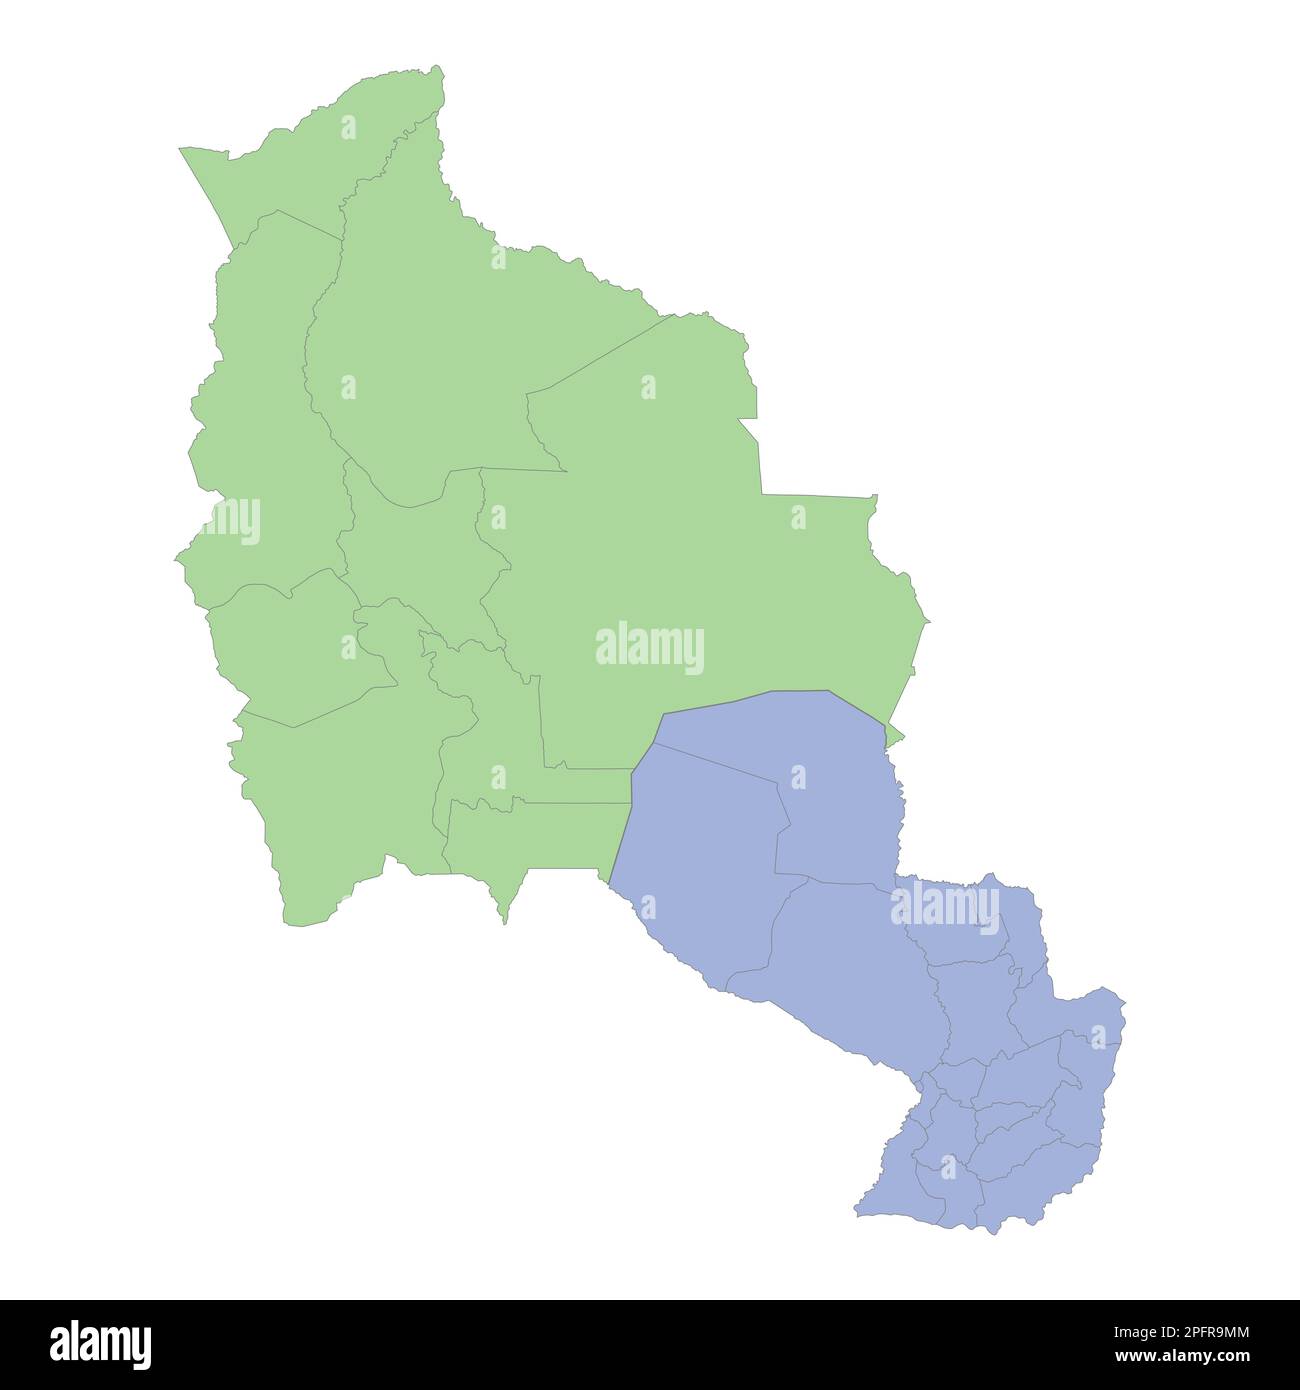 Mappa politica di alta qualità della Bolivia e del Paraguay con i confini delle regioni o province. Illustrazione vettoriale Illustrazione Vettoriale